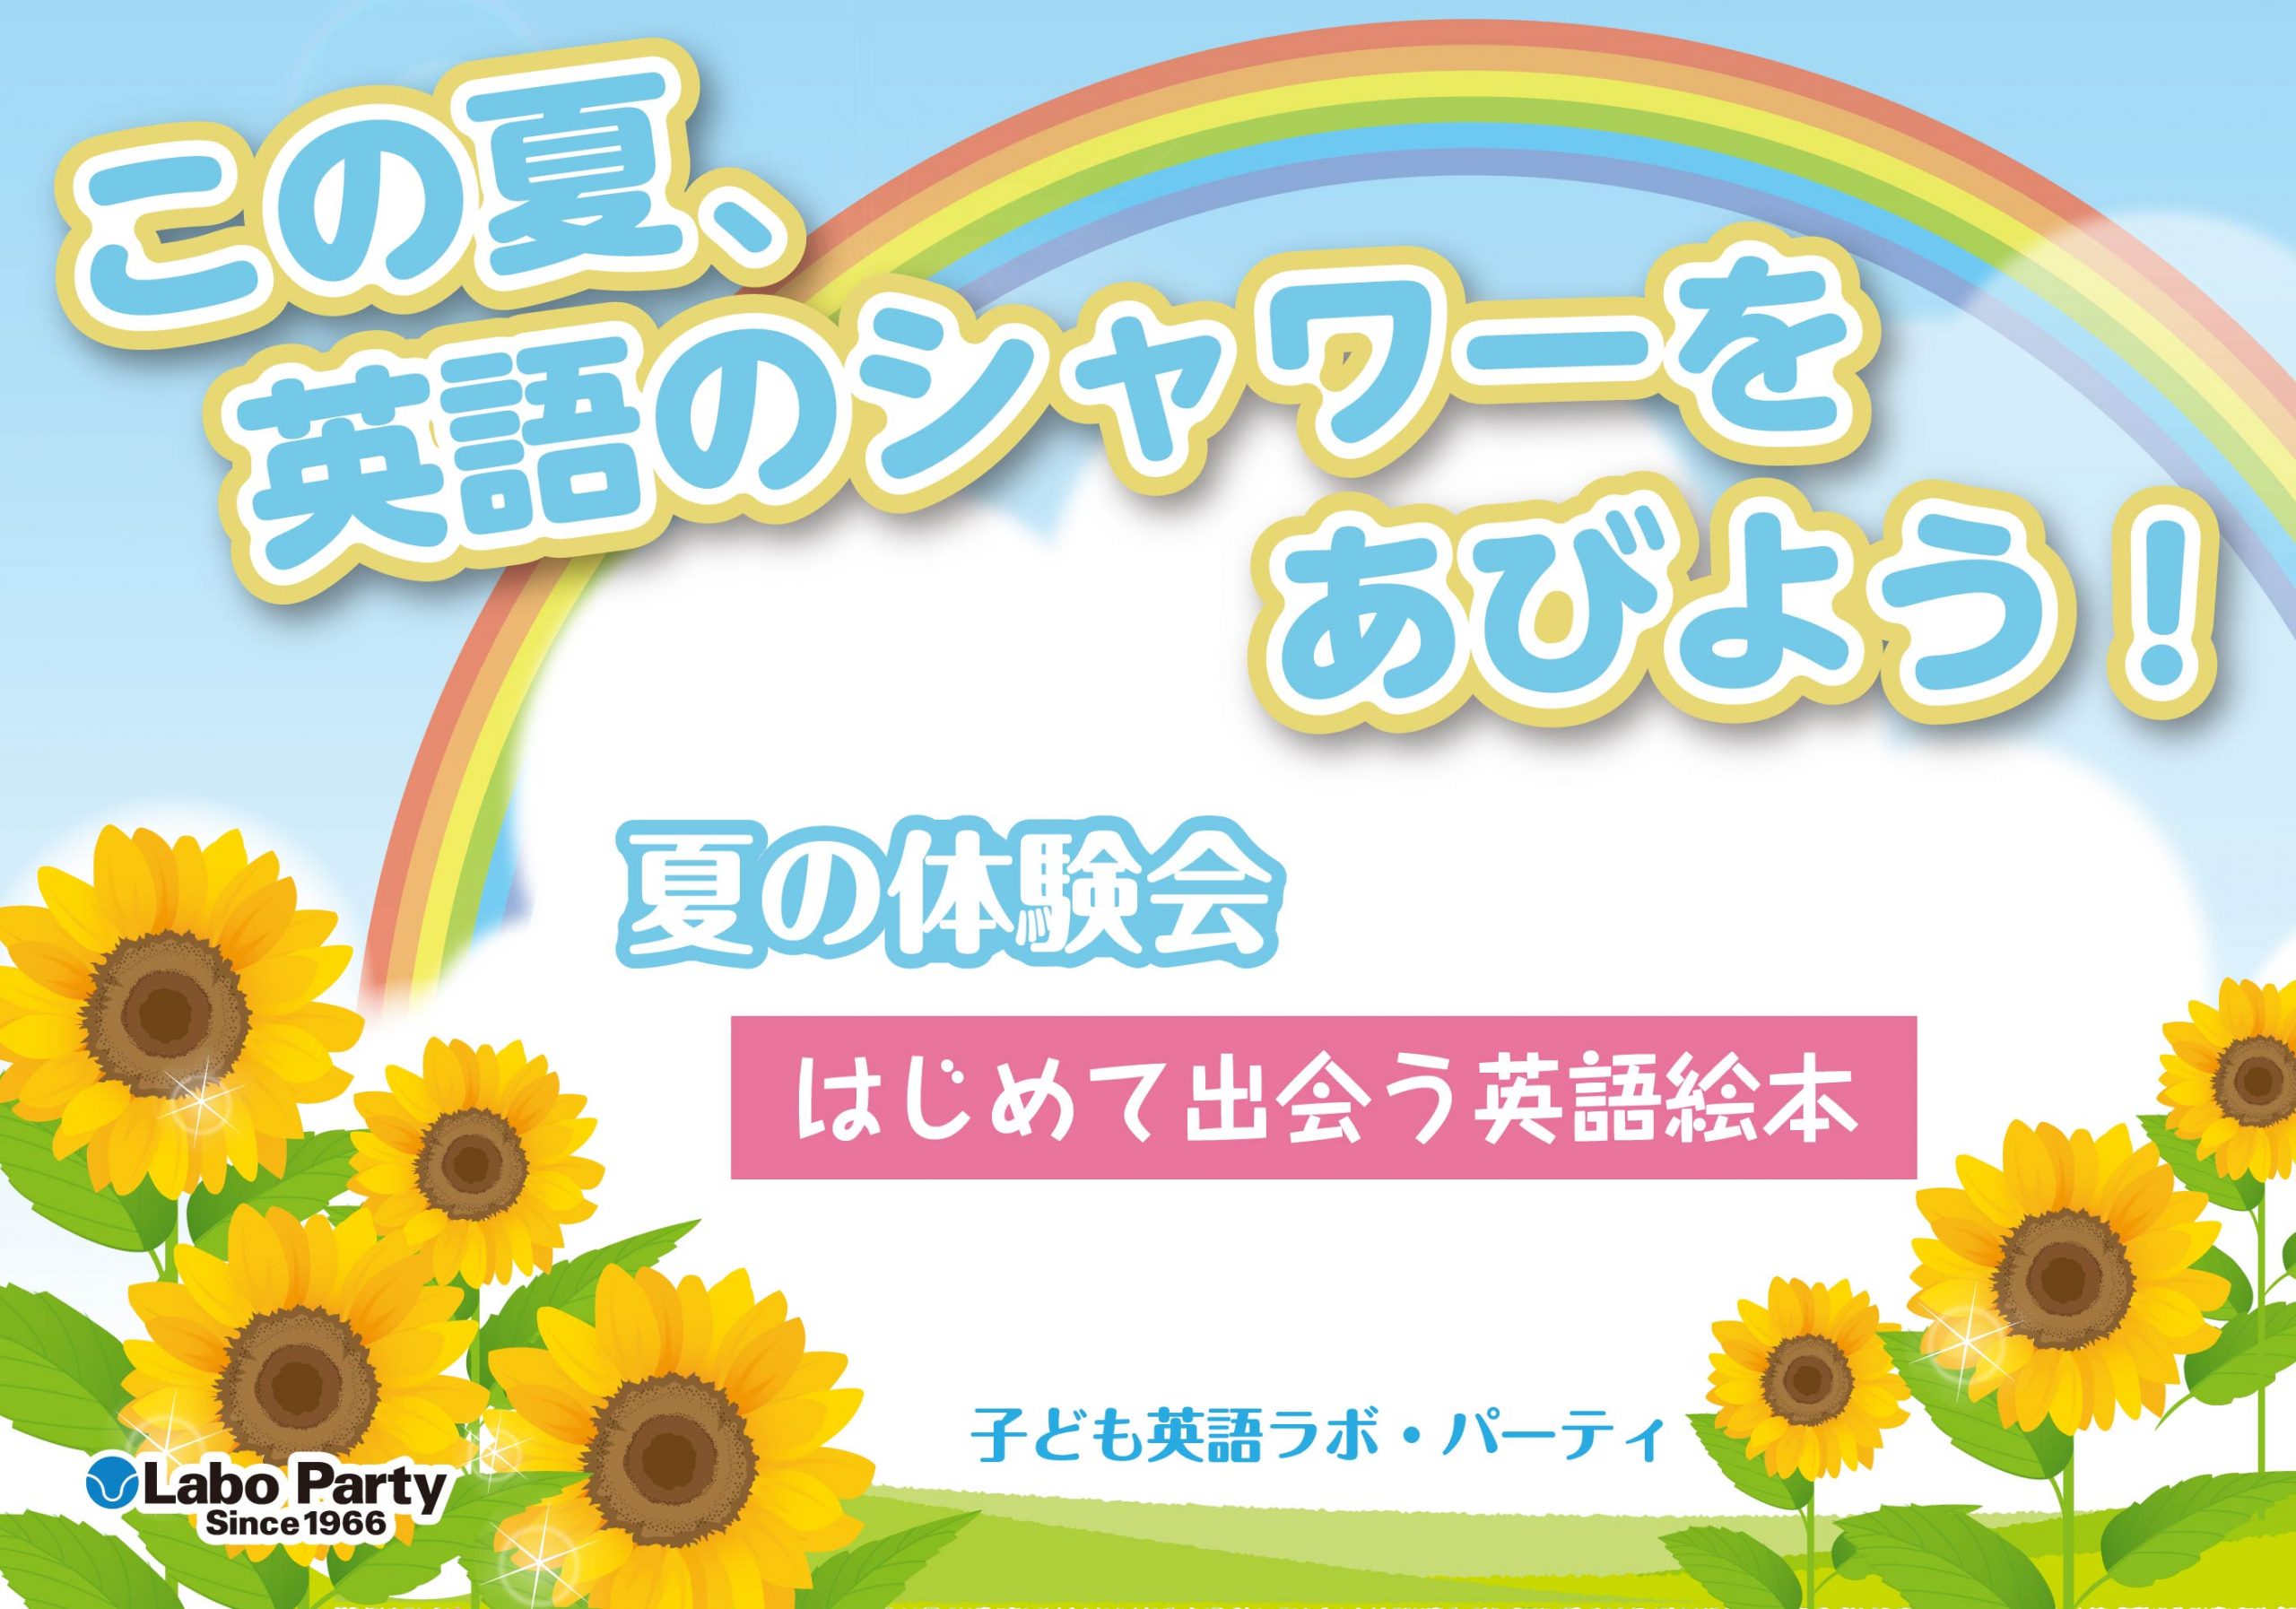 ラボ・パーティ 三郷市さつき平教室(茂木パーティ)のこの夏、英語のシャワーをあびよう！